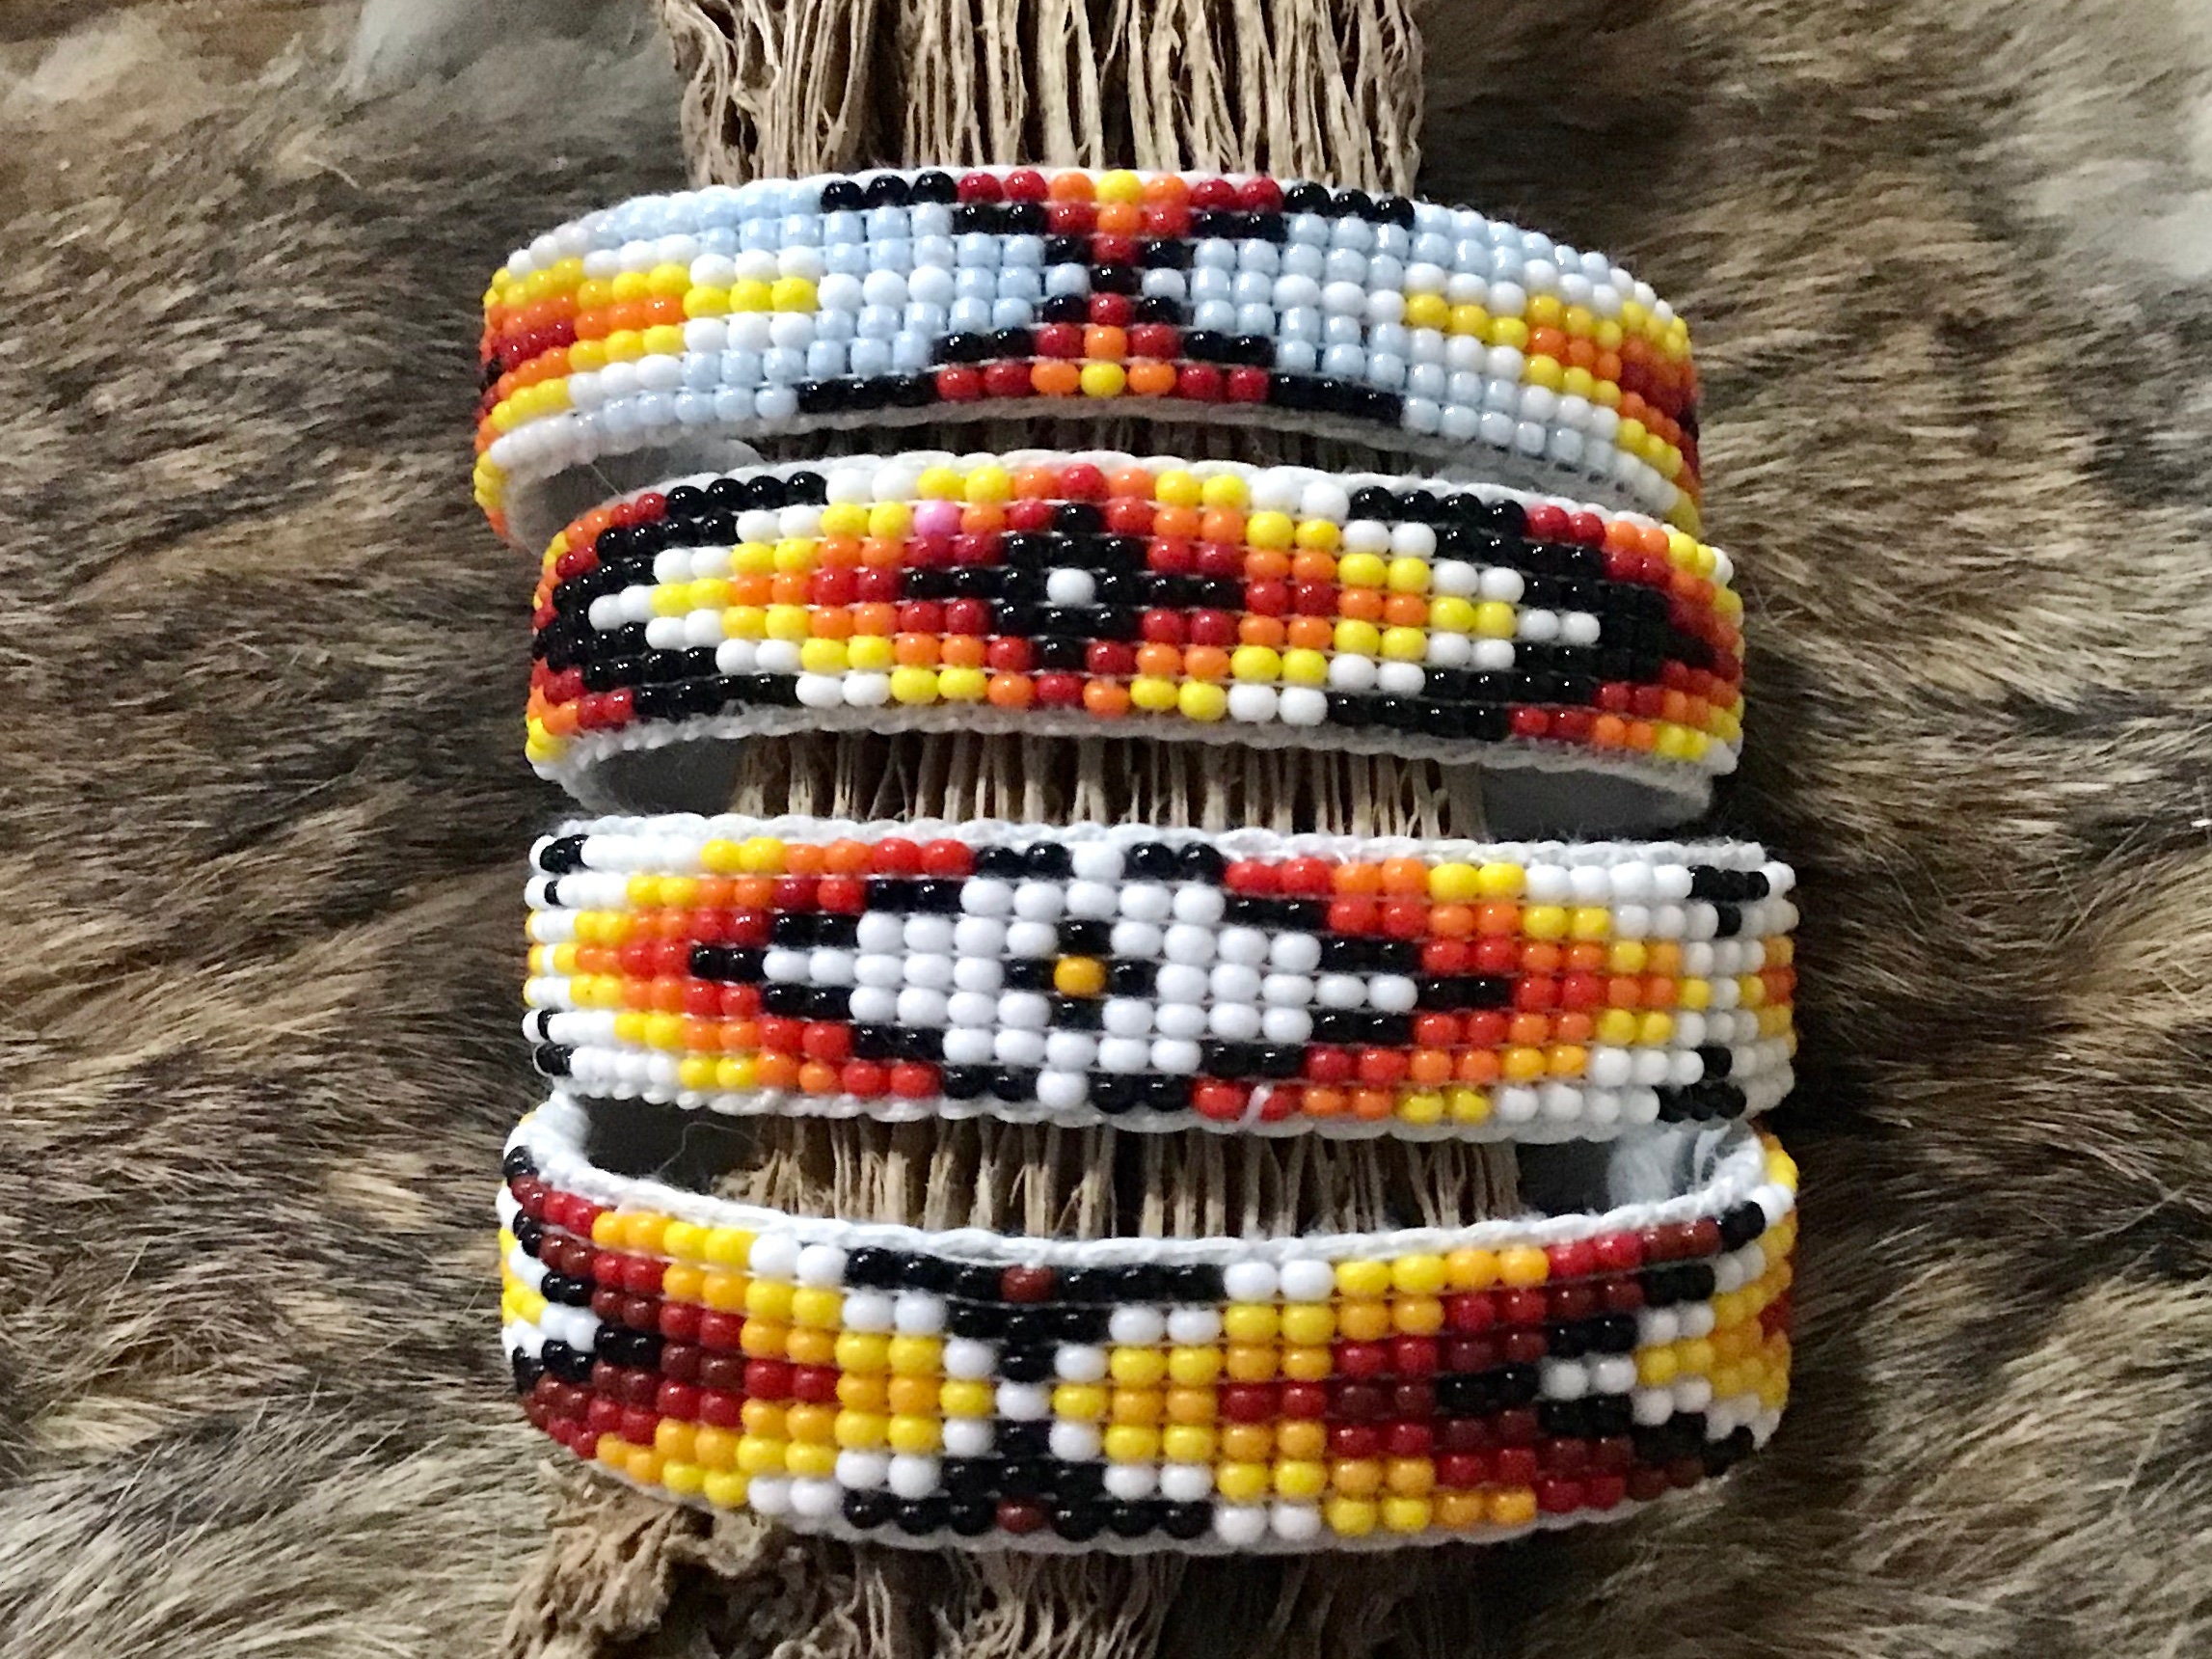 Hopi Man in the Maze Bracelet - Hopi Jewelry, Native American Bracelets